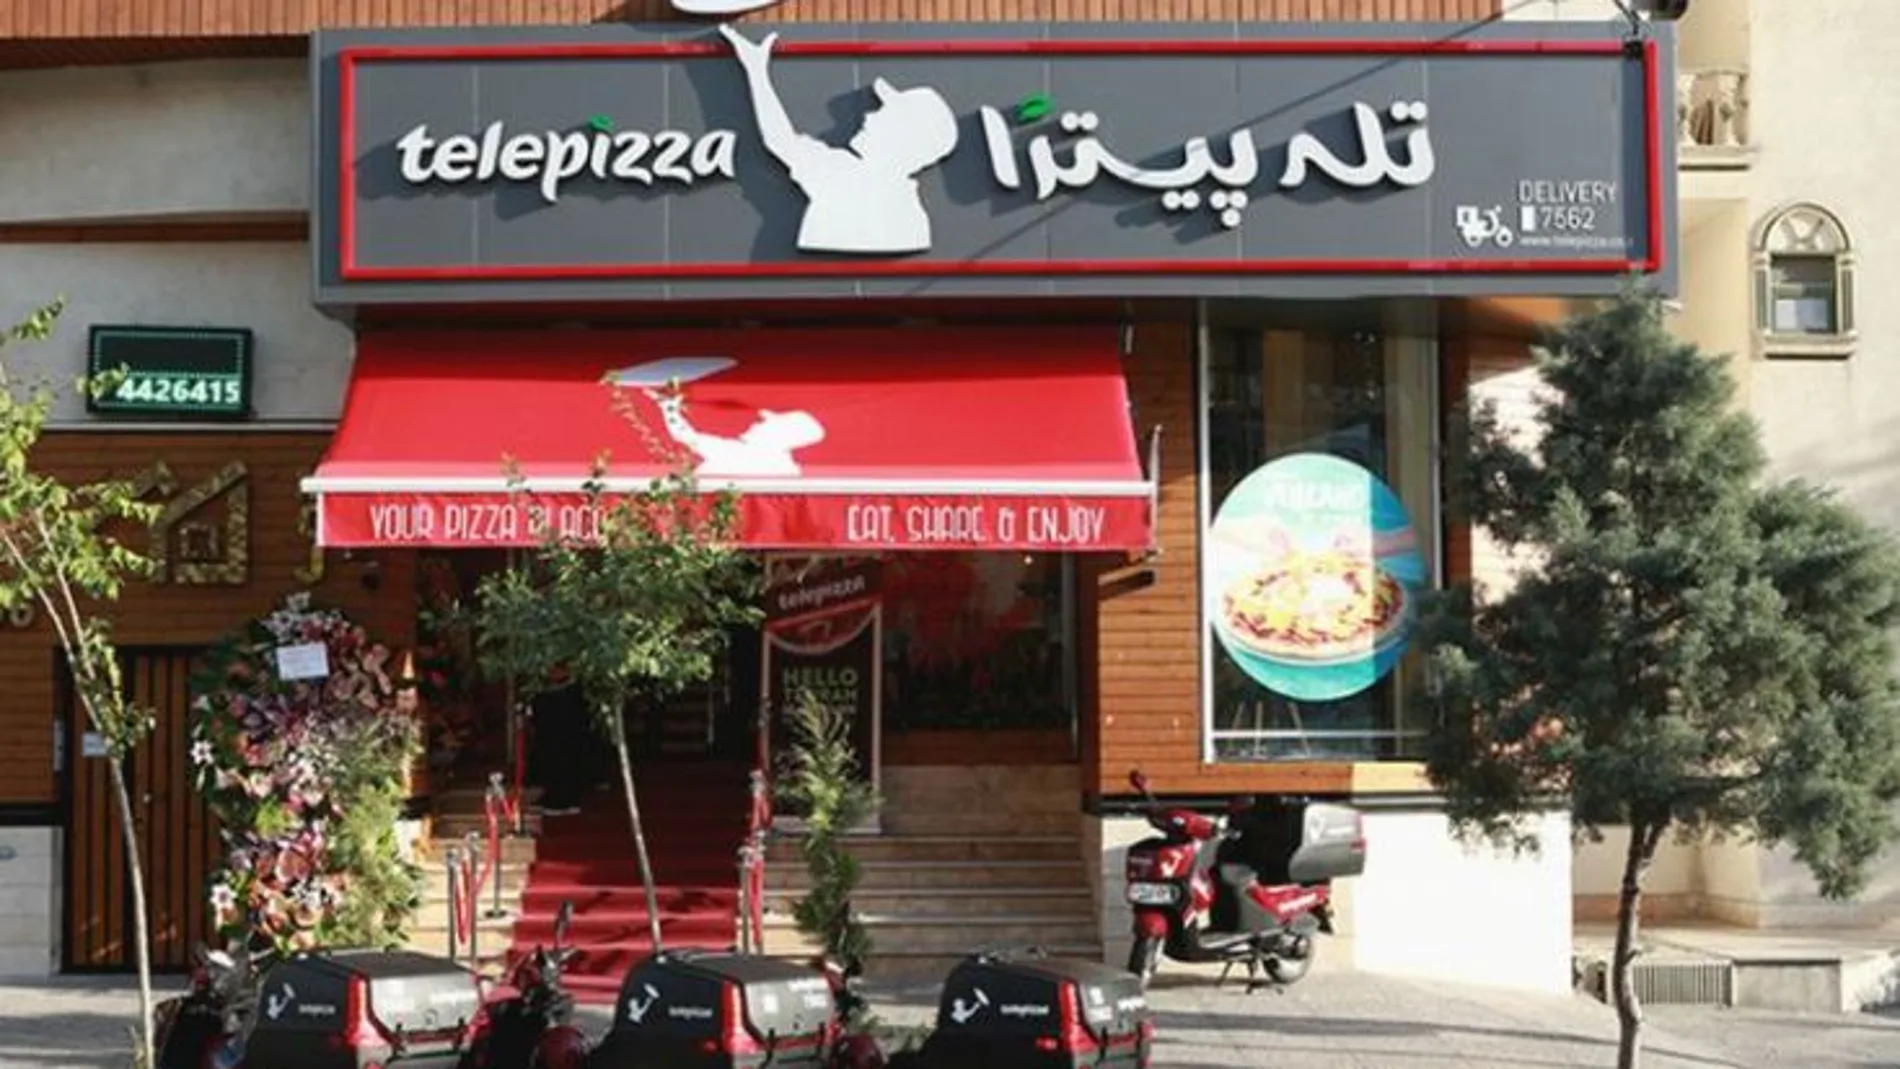 Tienda de Telepizza en Teheran / Foto: Telepizza